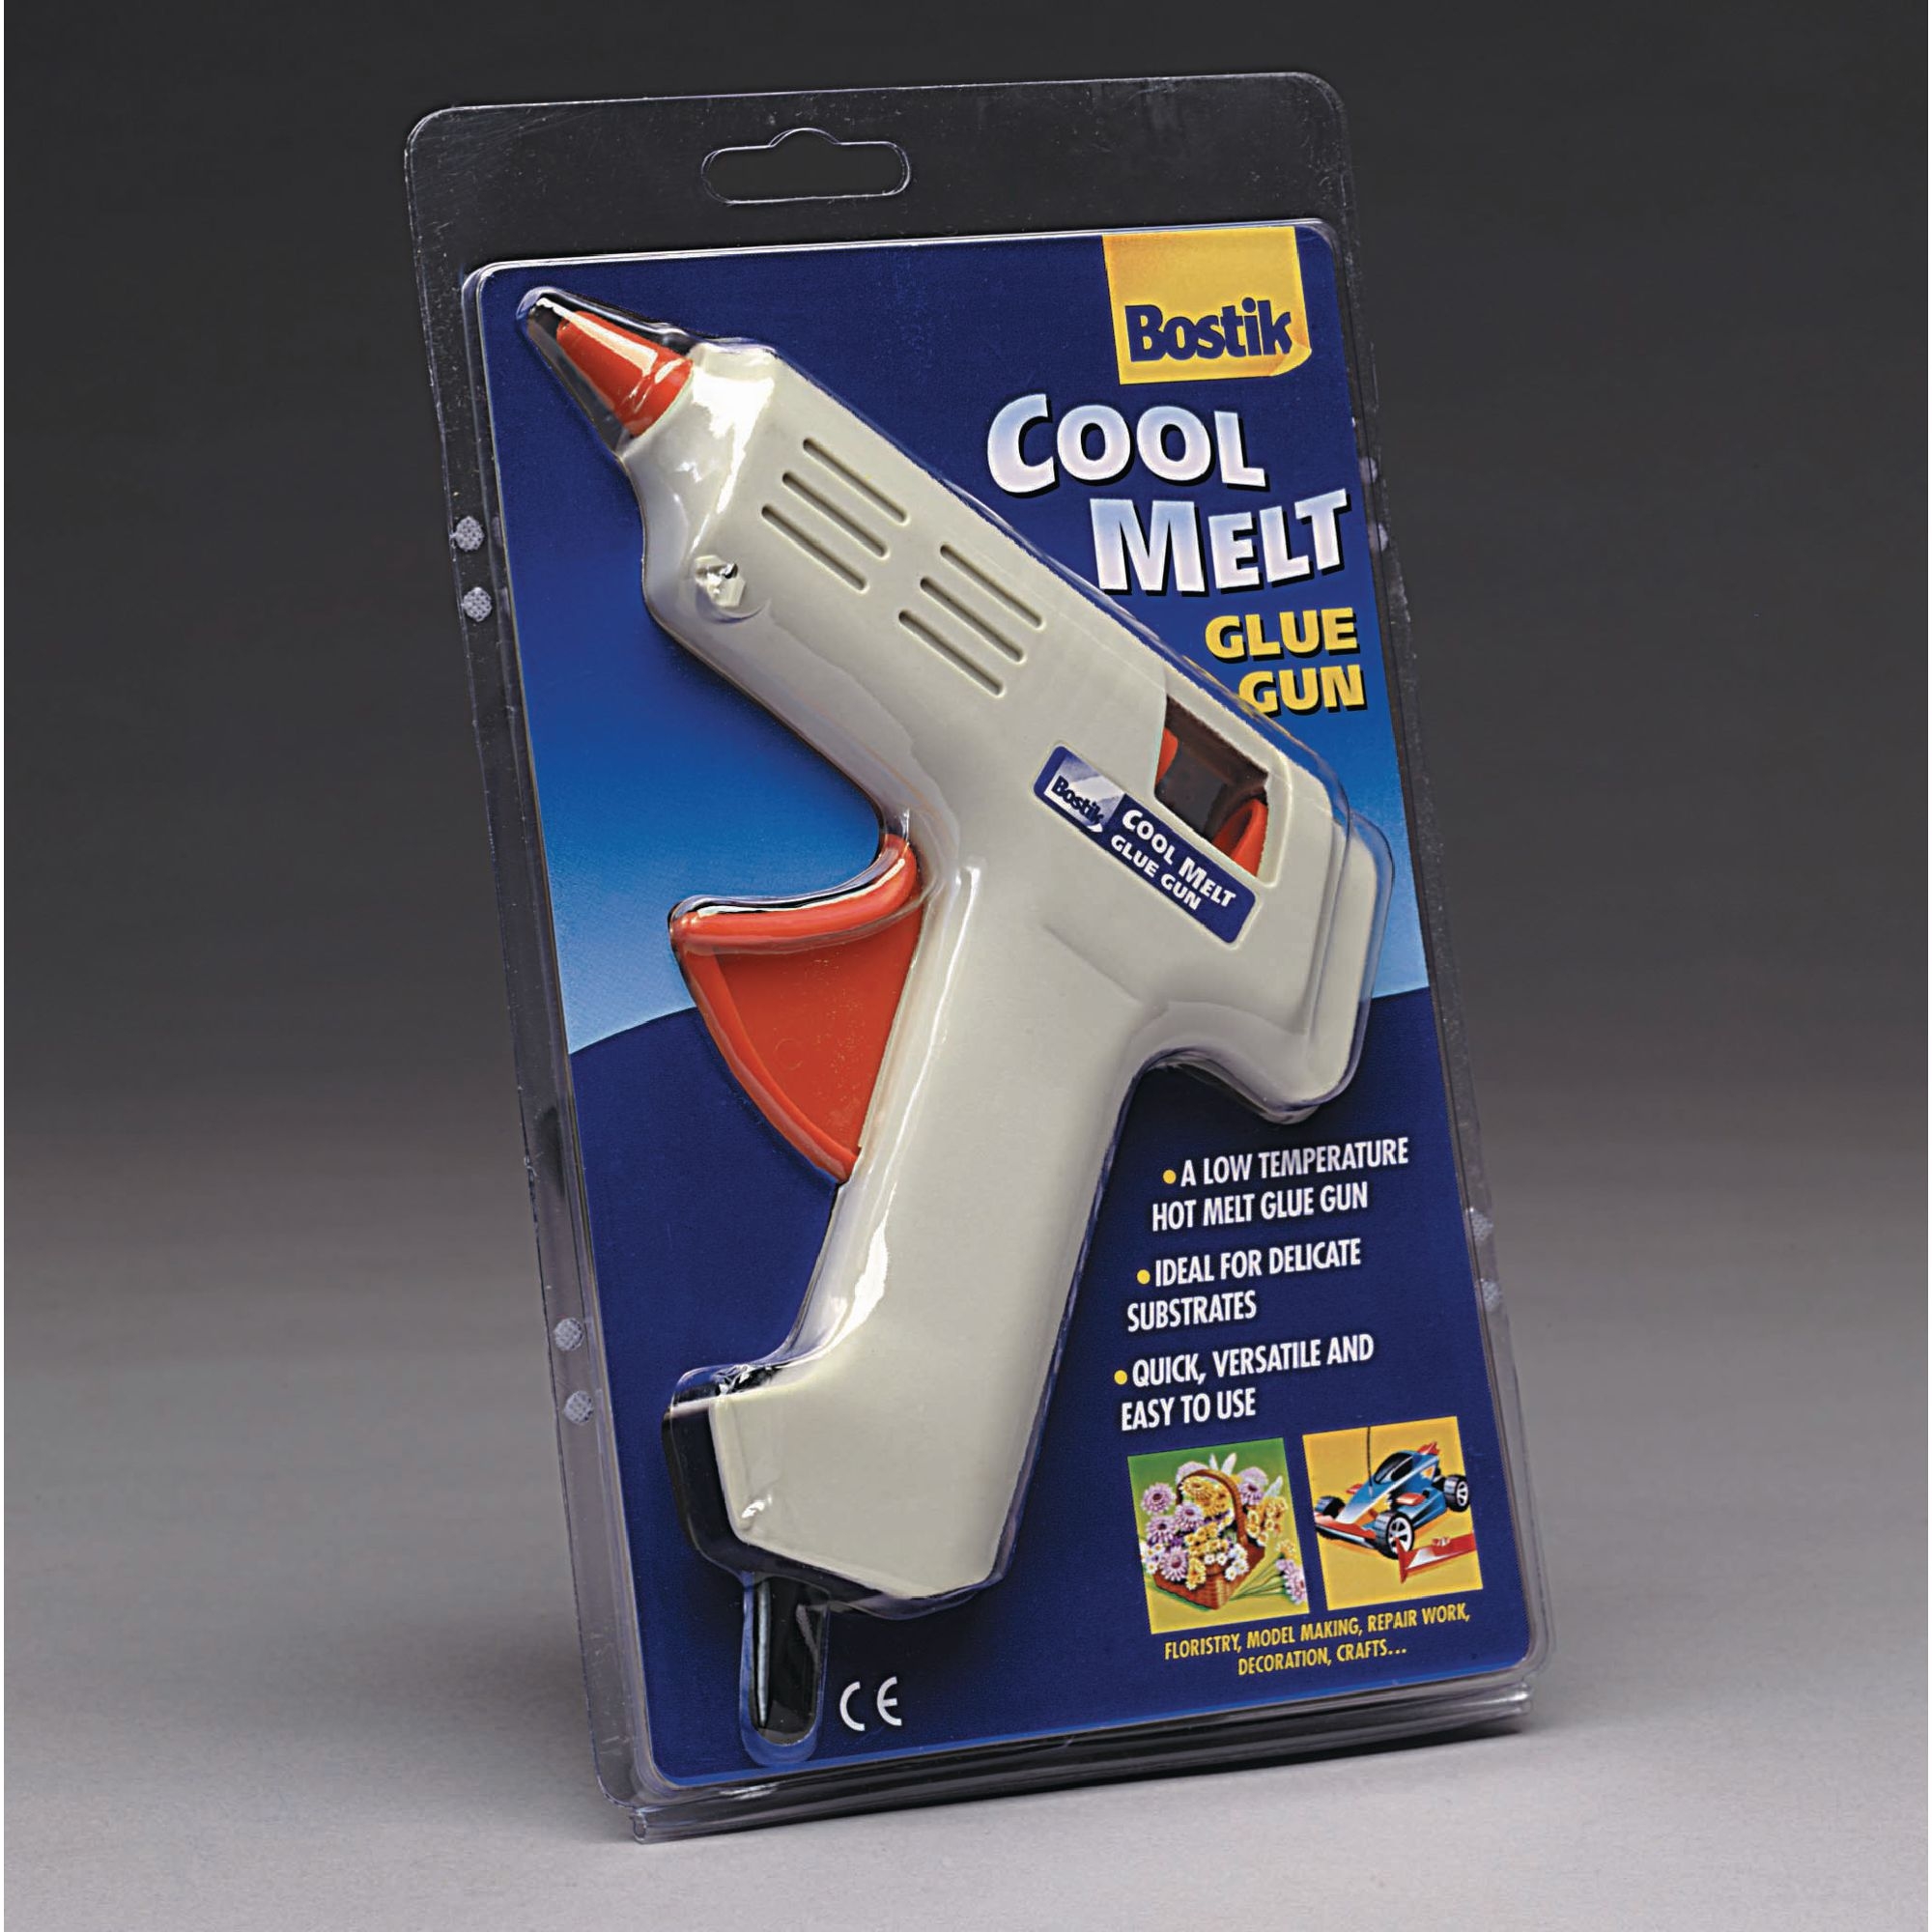 Bostik Craft Cool Melt Glue Gun